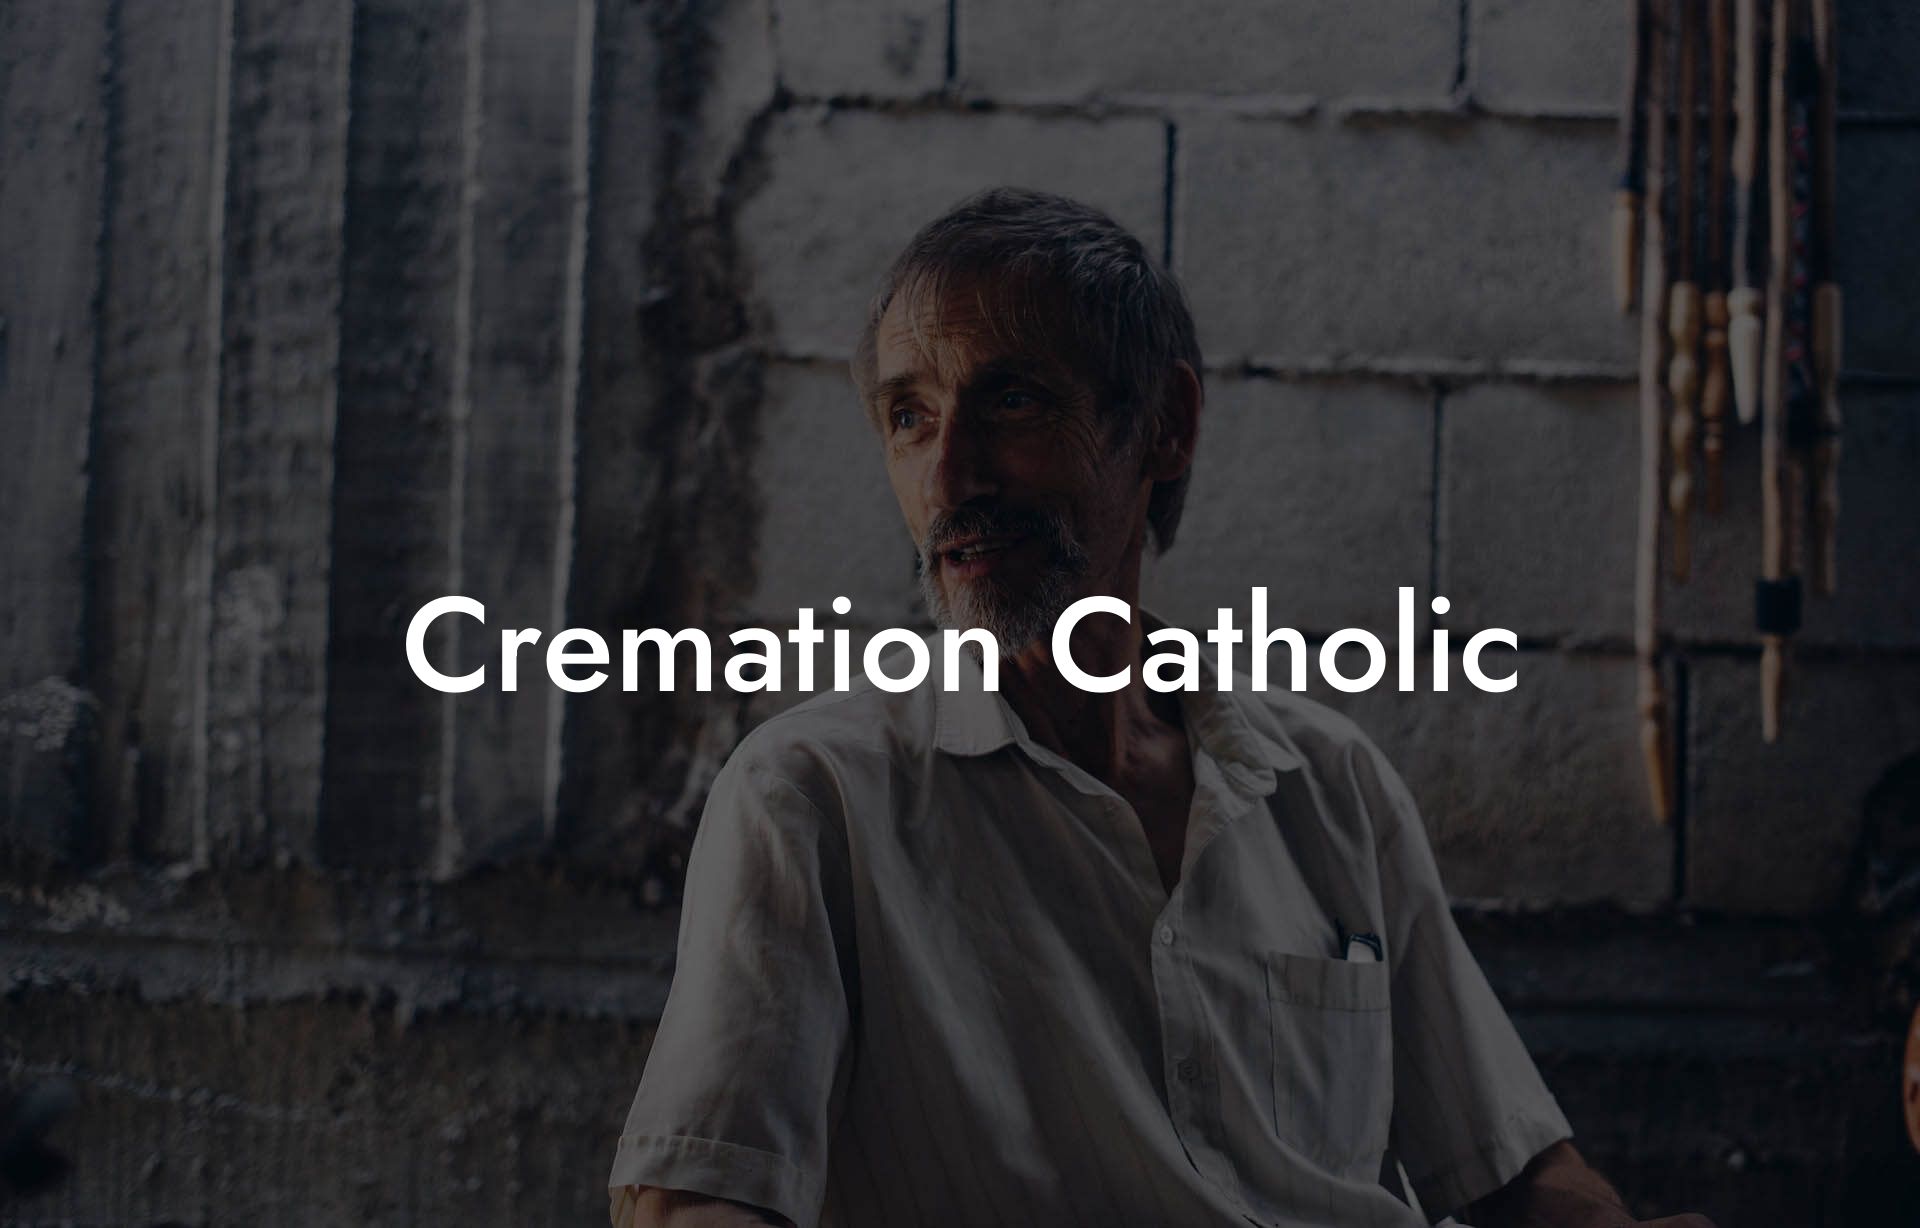 Cremation Catholic